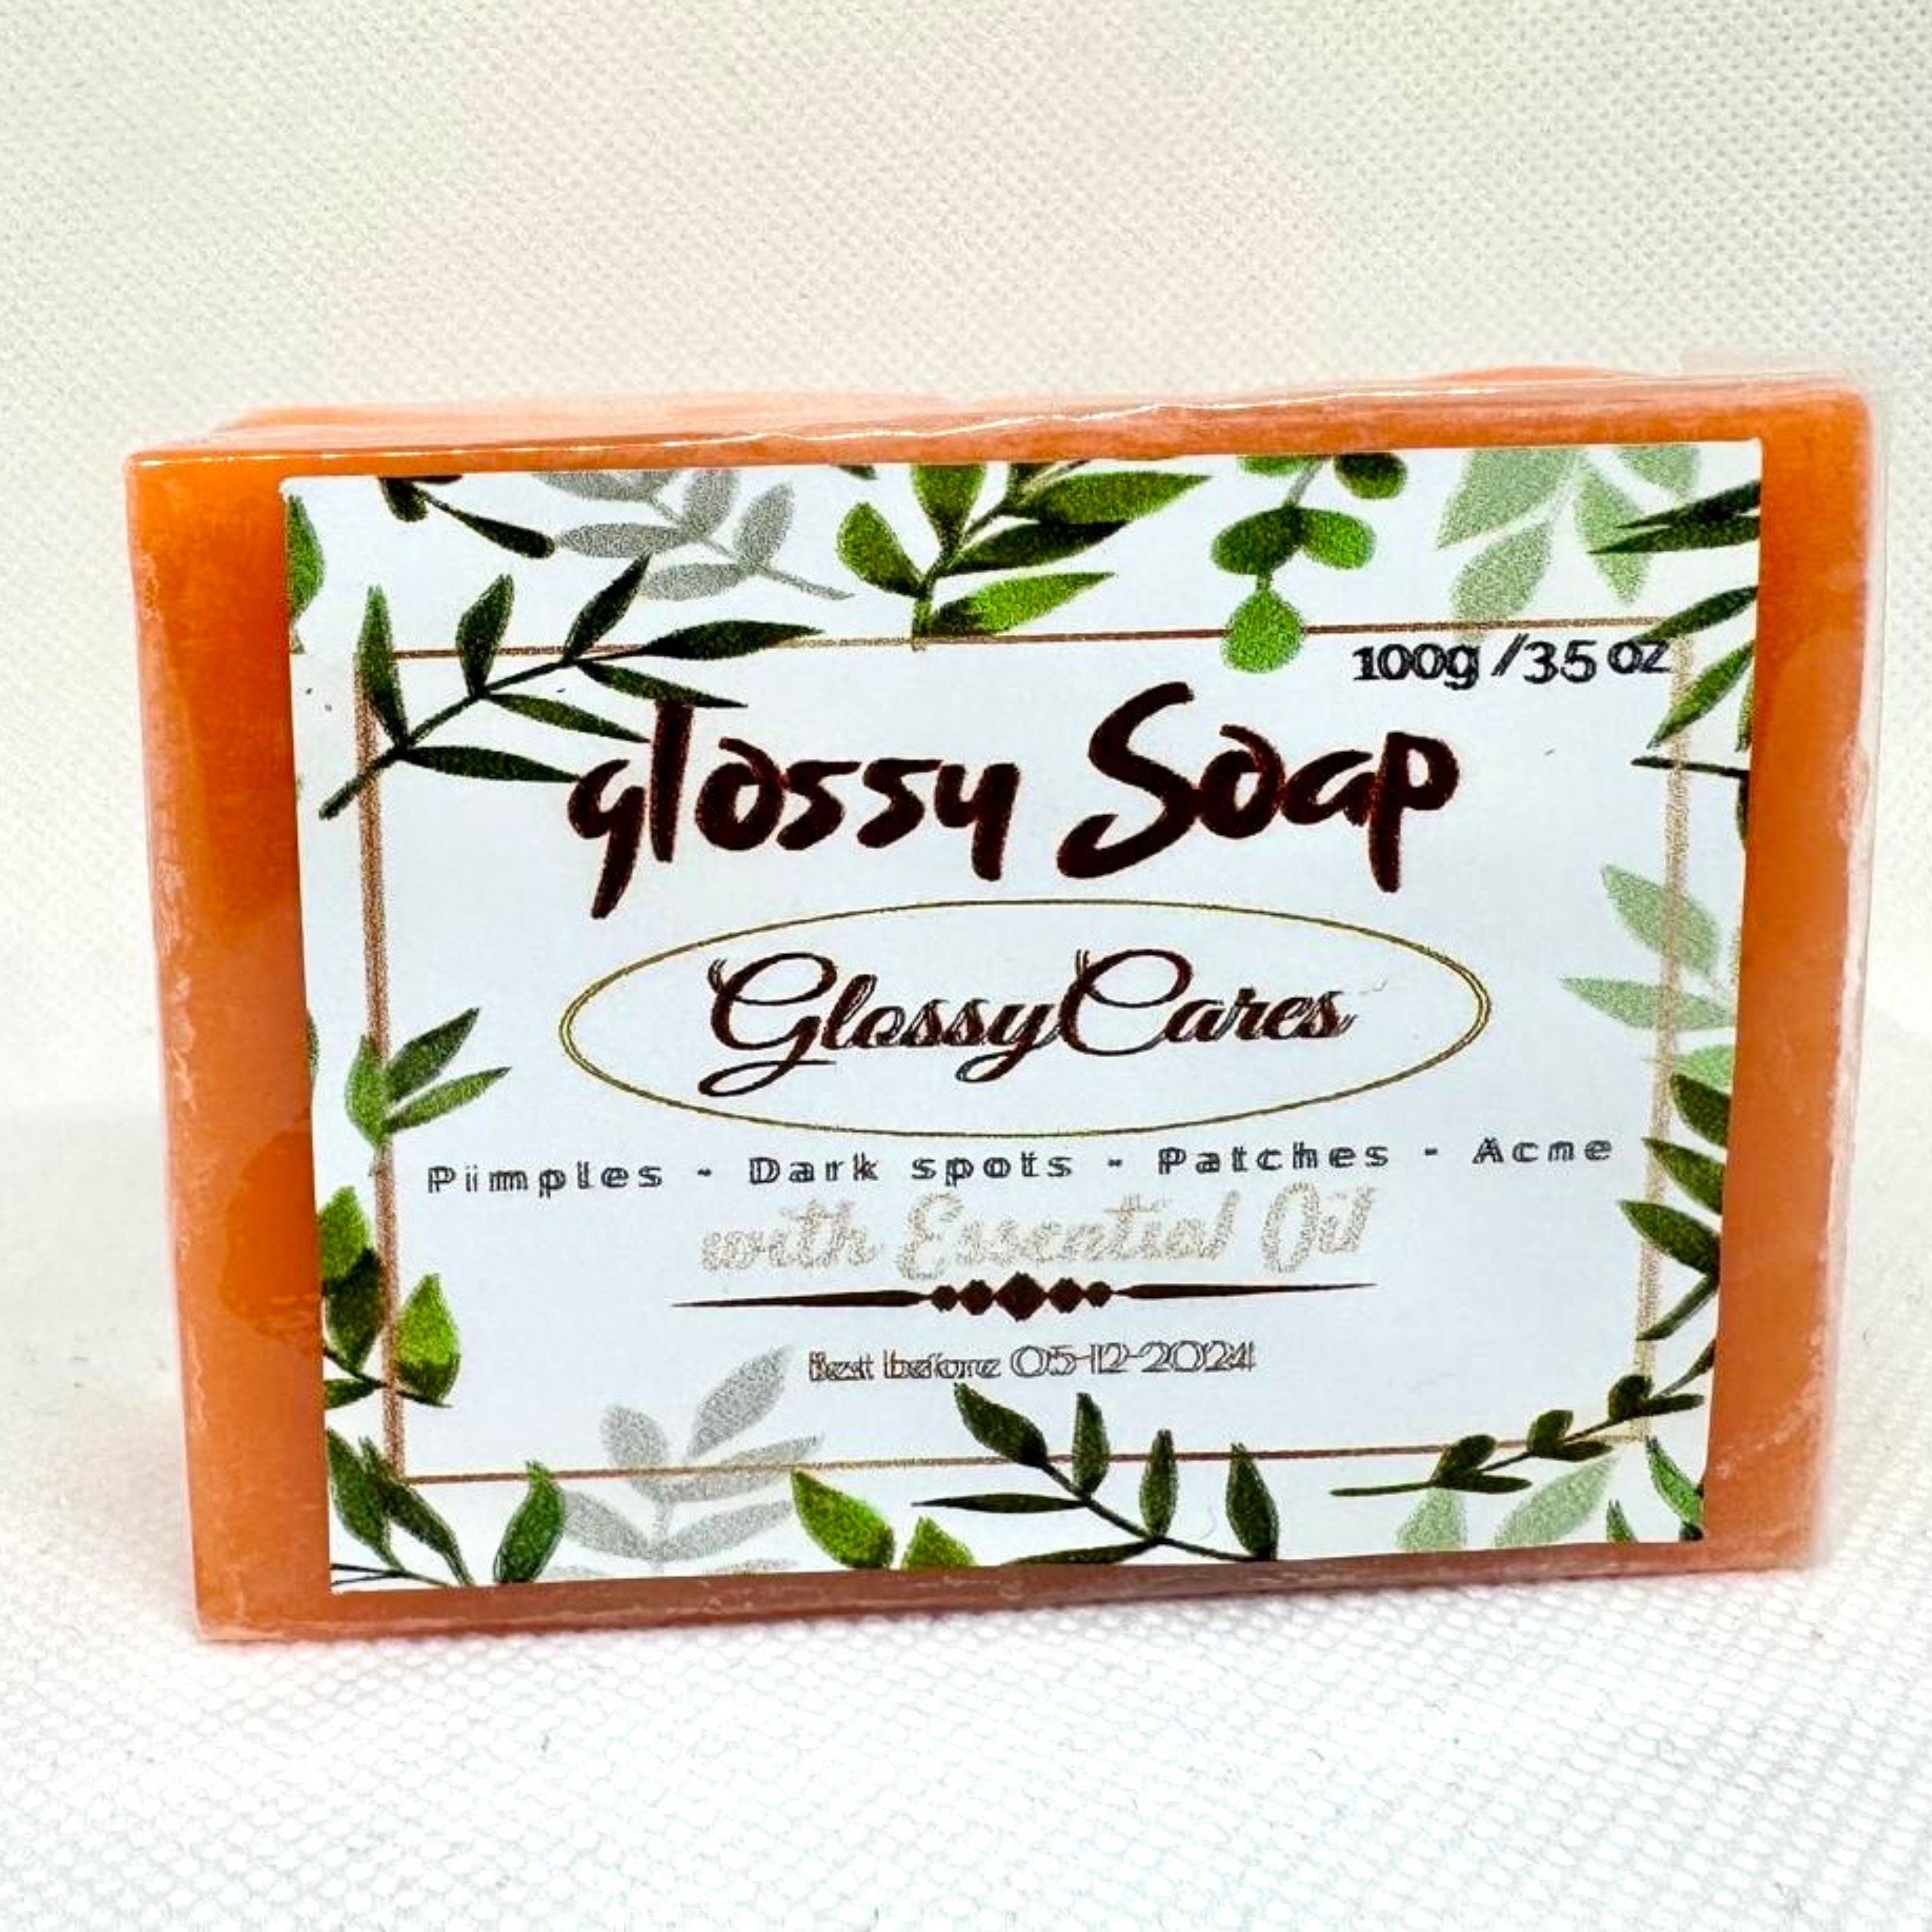 GLOSSY BAR SOAP